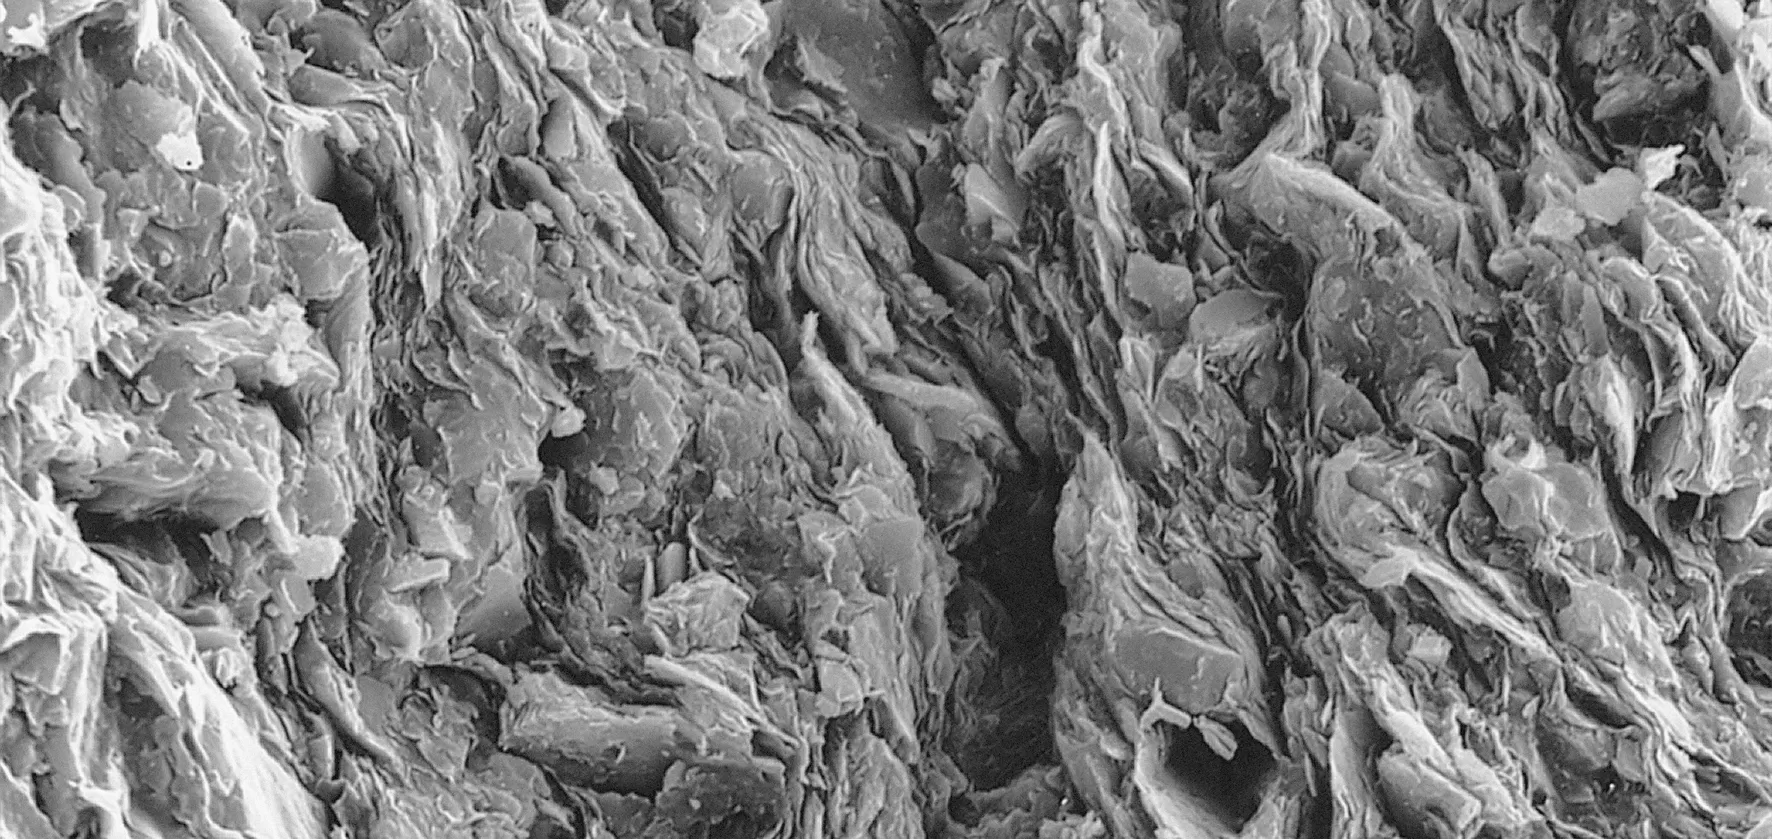 Rasterelektronenmikroskopische Aufnahme des Opalinustons: Ein Gramm Opalinuston hat eine Oberfläche von zirka 100 Quadratmetern. Das entspricht etwa der Fläche eines Badmintonfelds (Bildbreite Aufnahme zirka 0,05 mm).